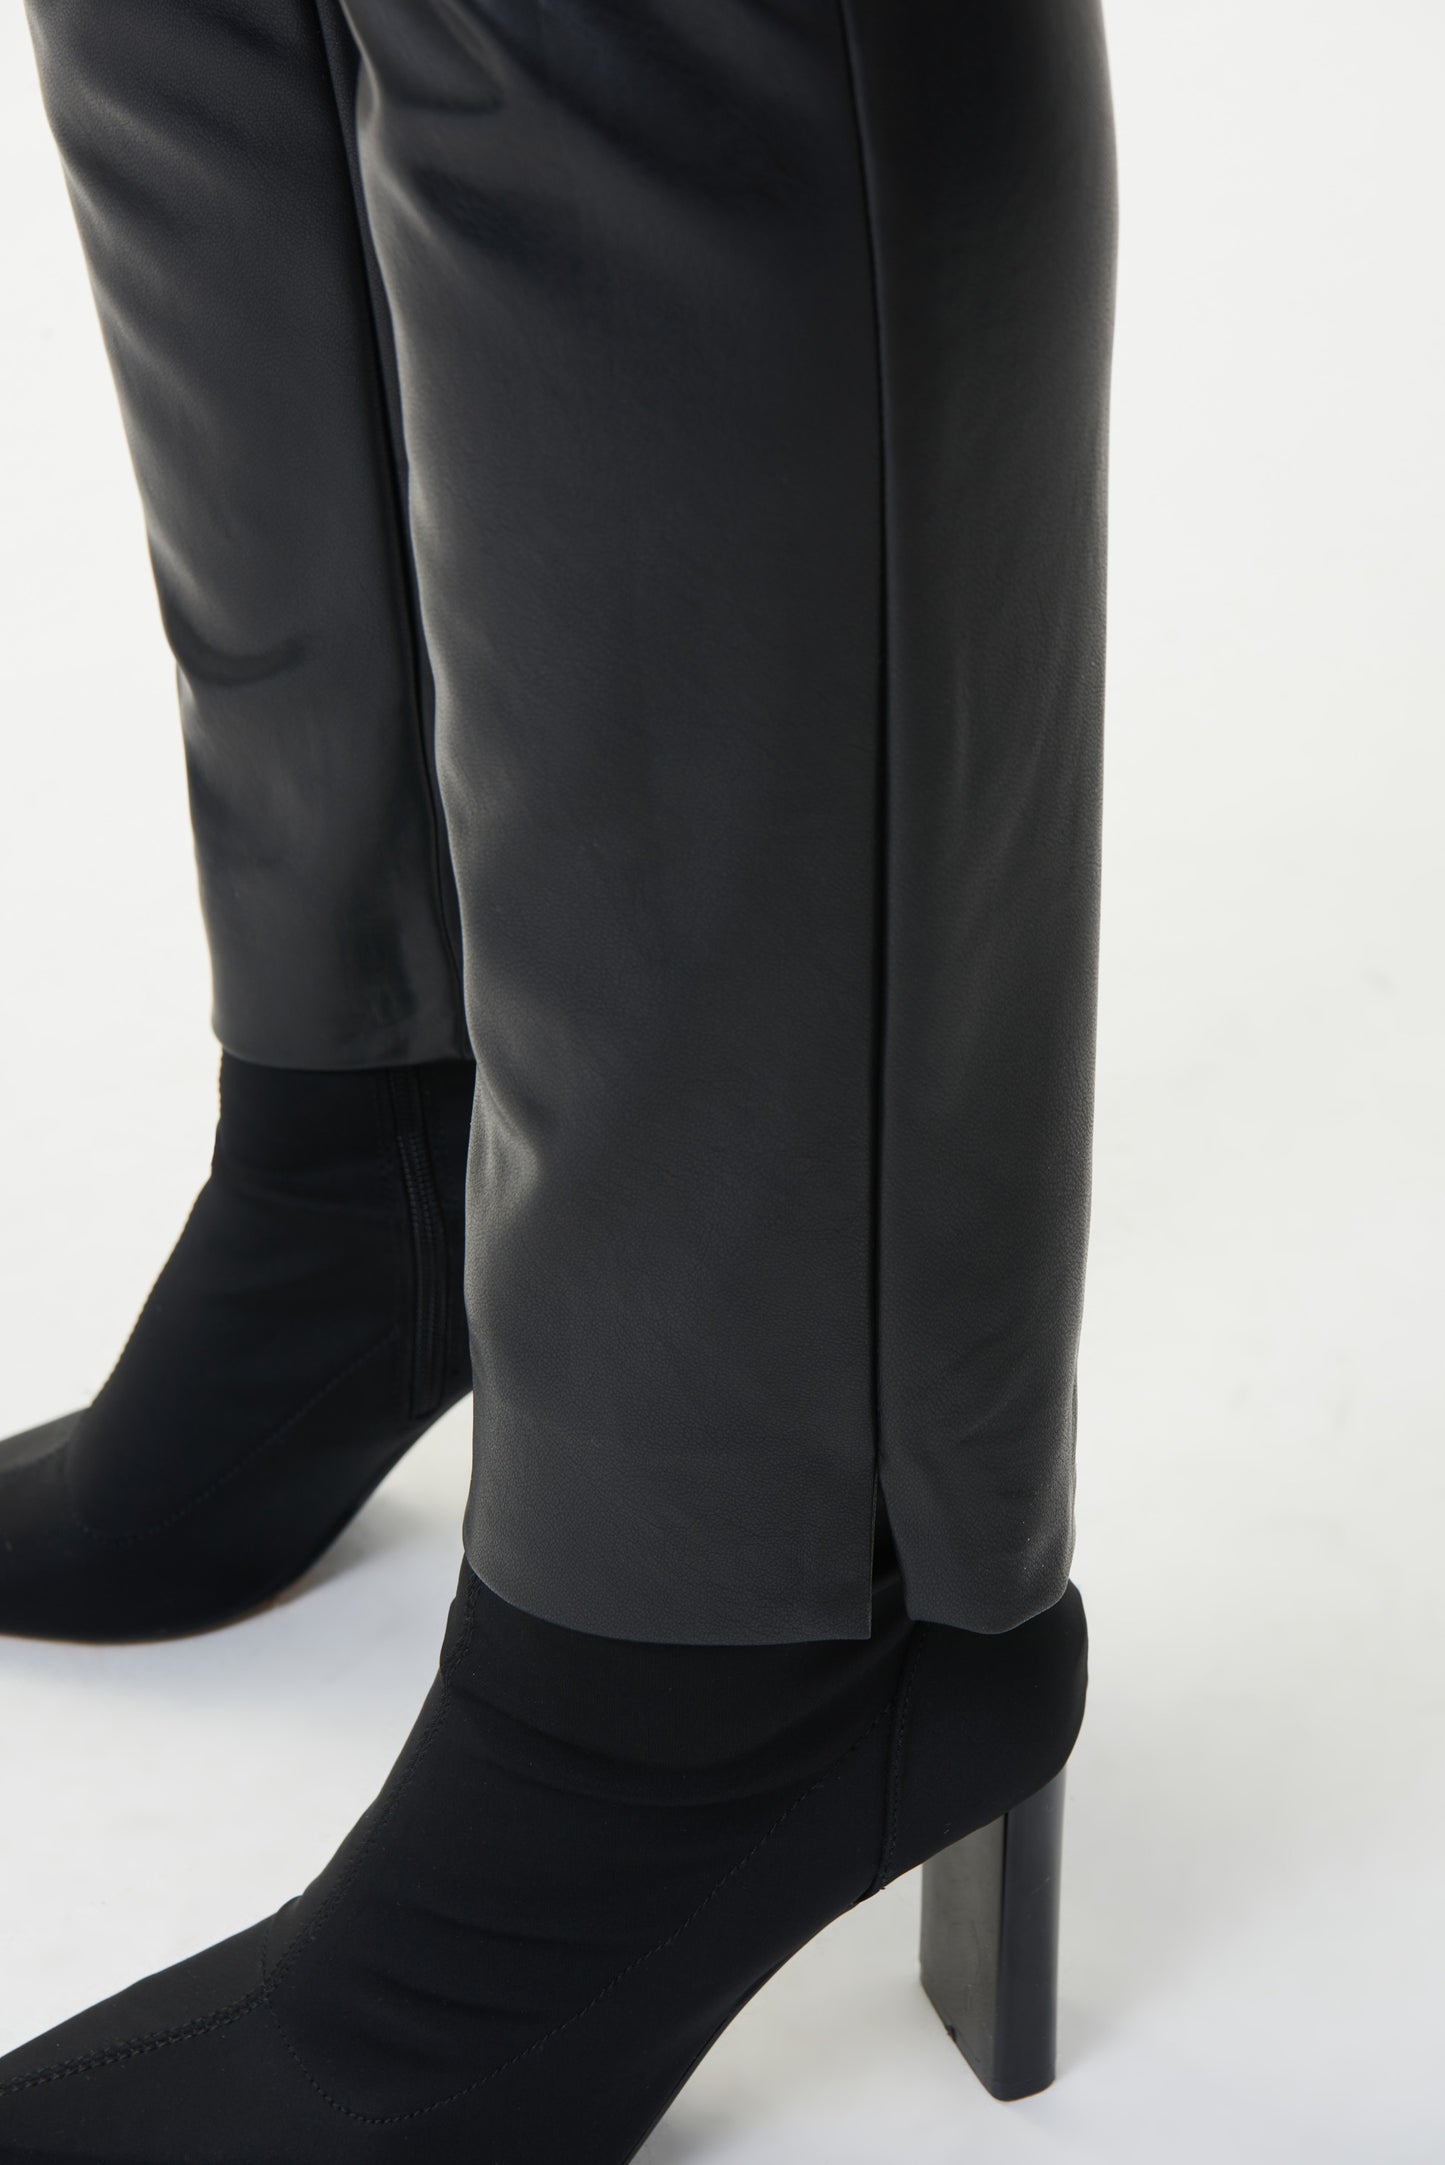 Pantalon noir ajusté en simili cuir - Modèle 223196